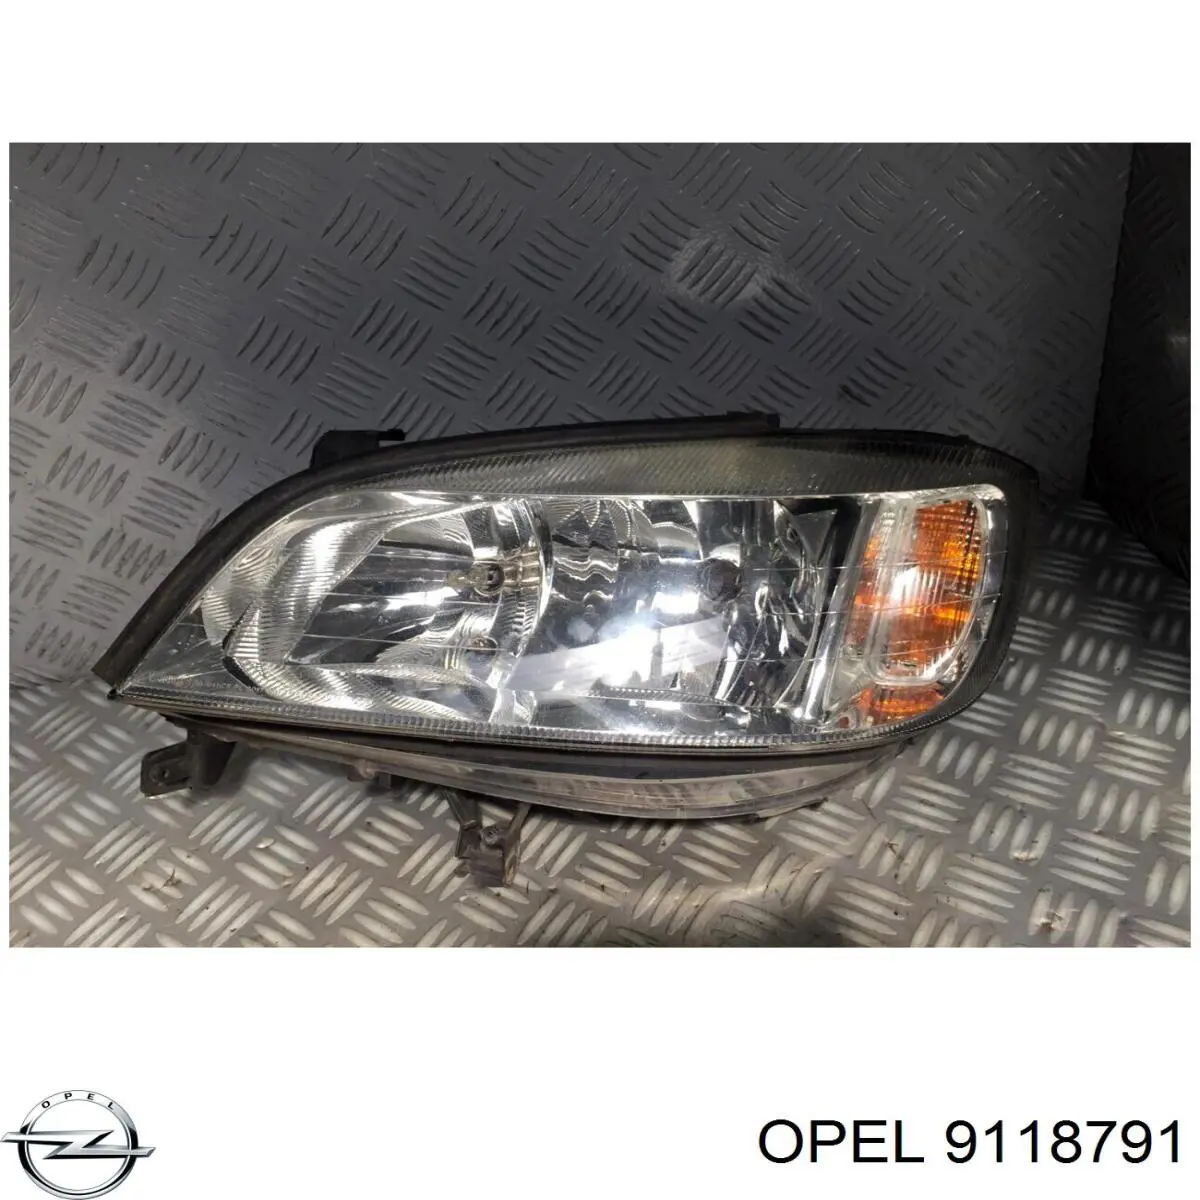 9118791 Opel faro izquierdo